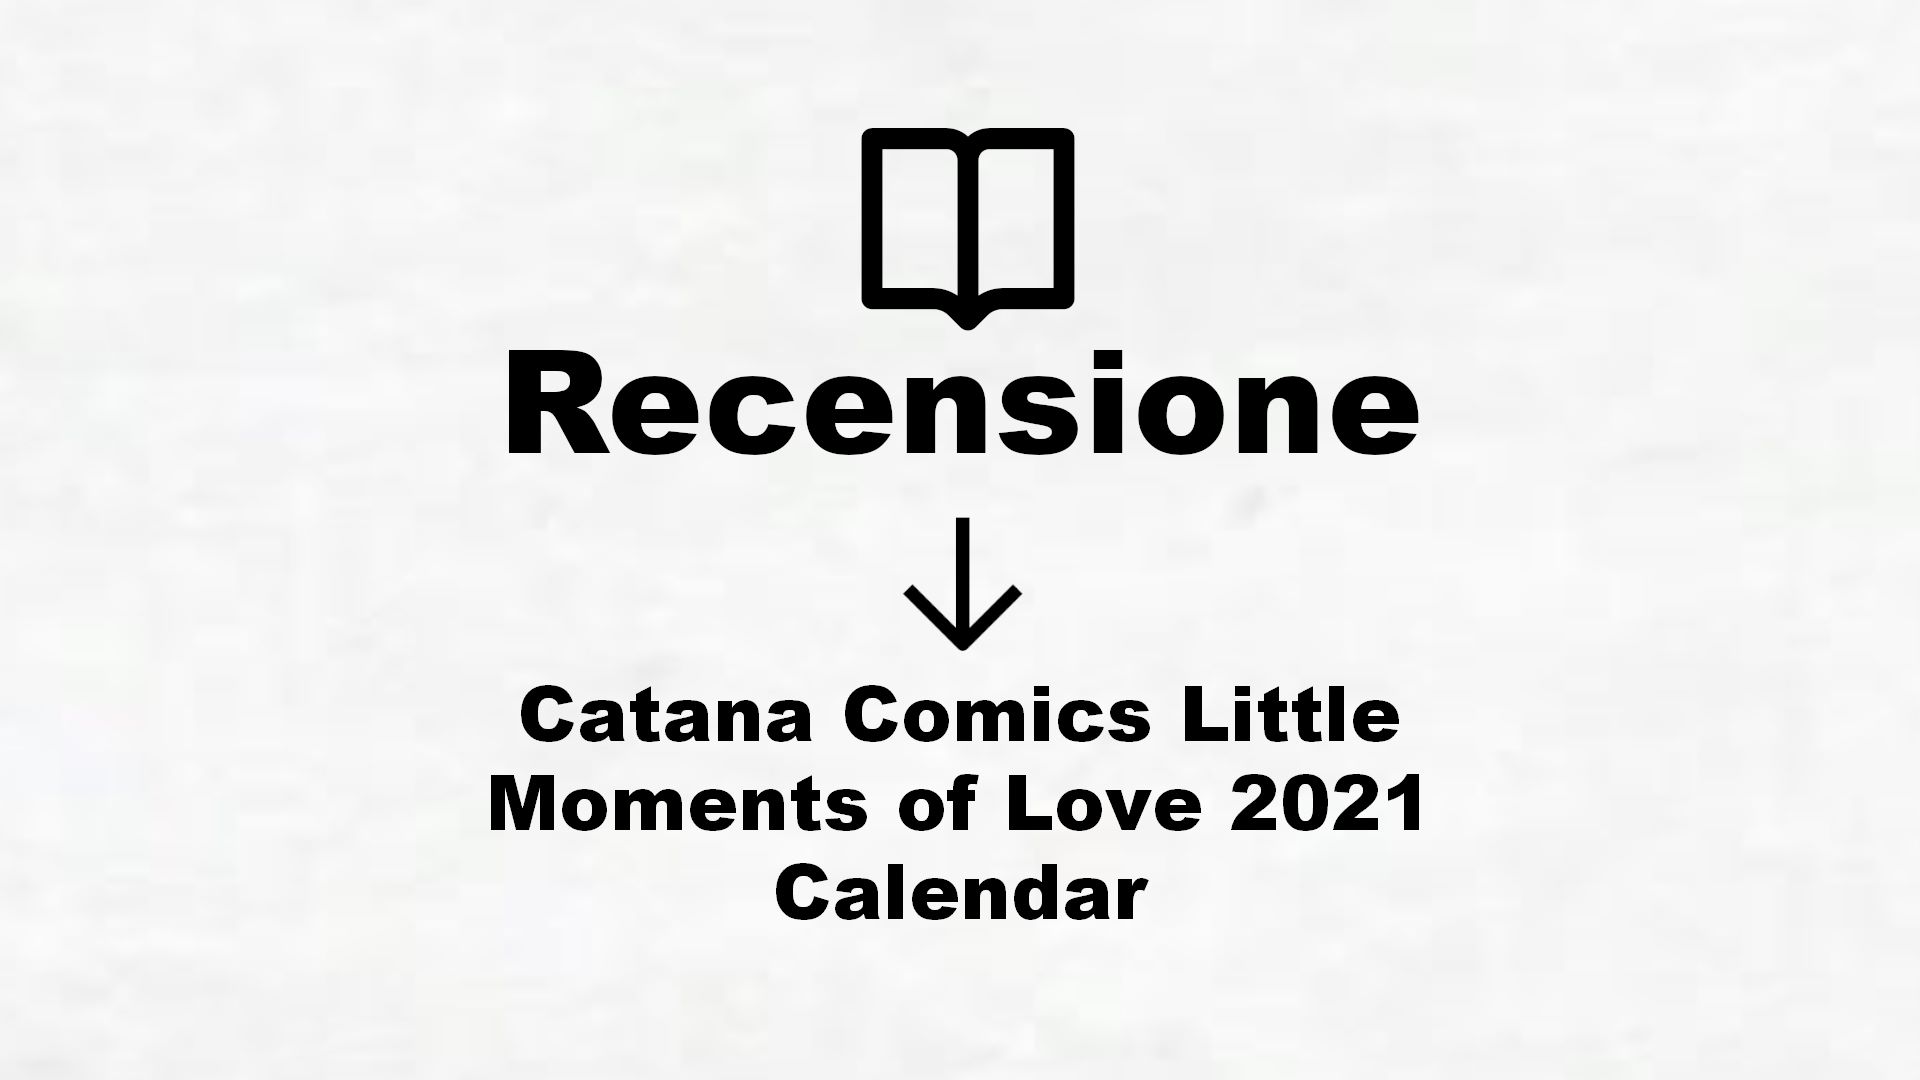 Catana Comics Little Moments of Love 2021 Calendar – Recensione Libro